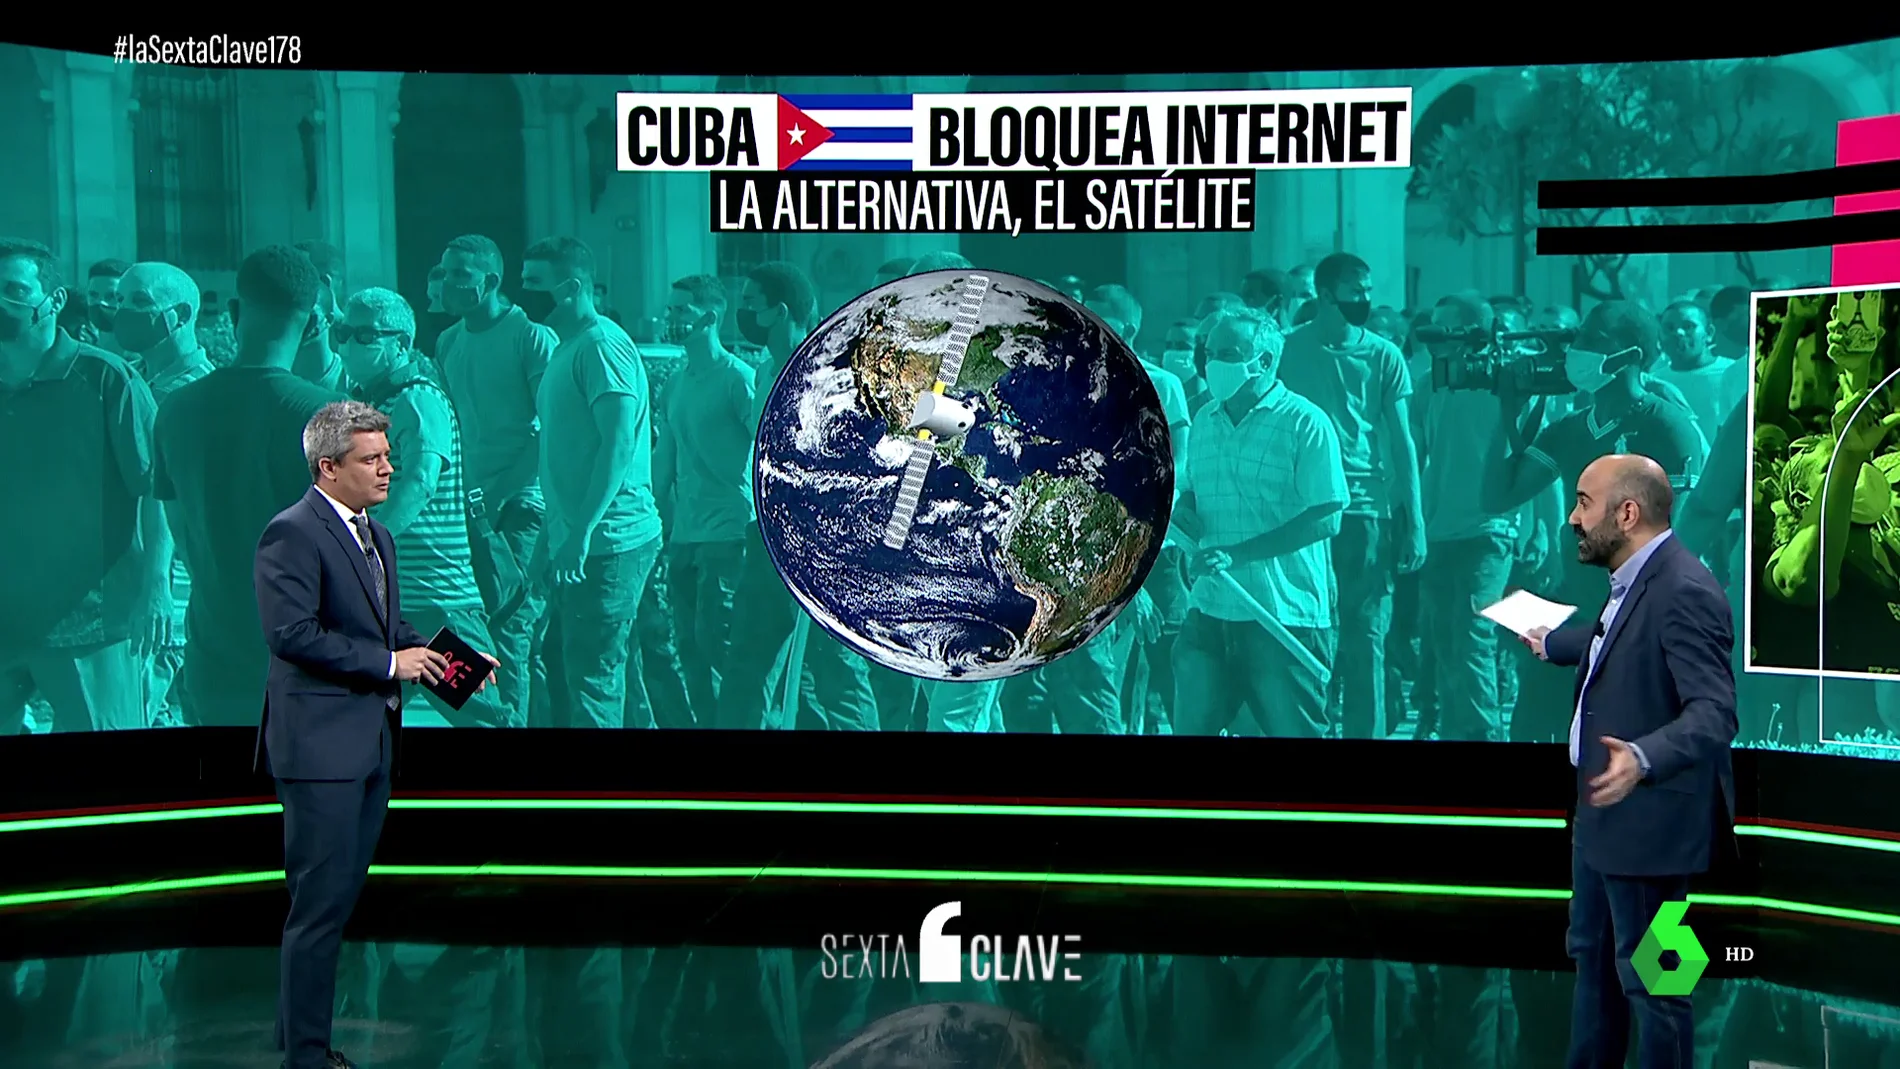 ¿Cómo puede un presidente cortar Internet en un país entero? Este es el caso de Cuba